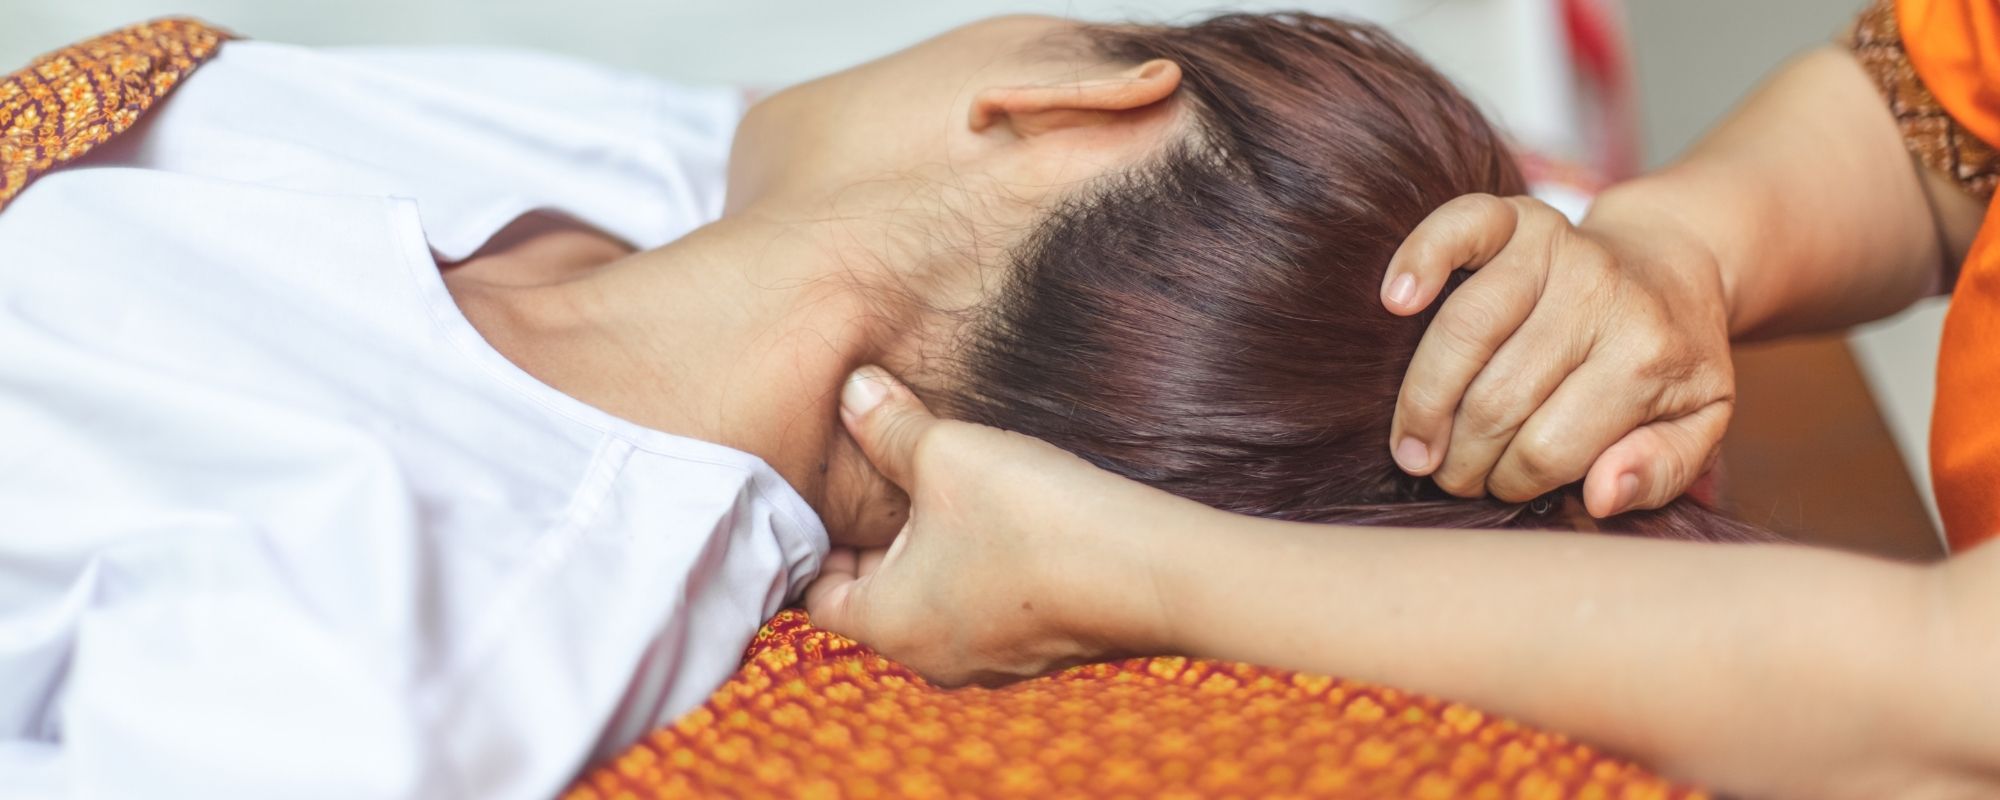 Massage pour soulager migraine